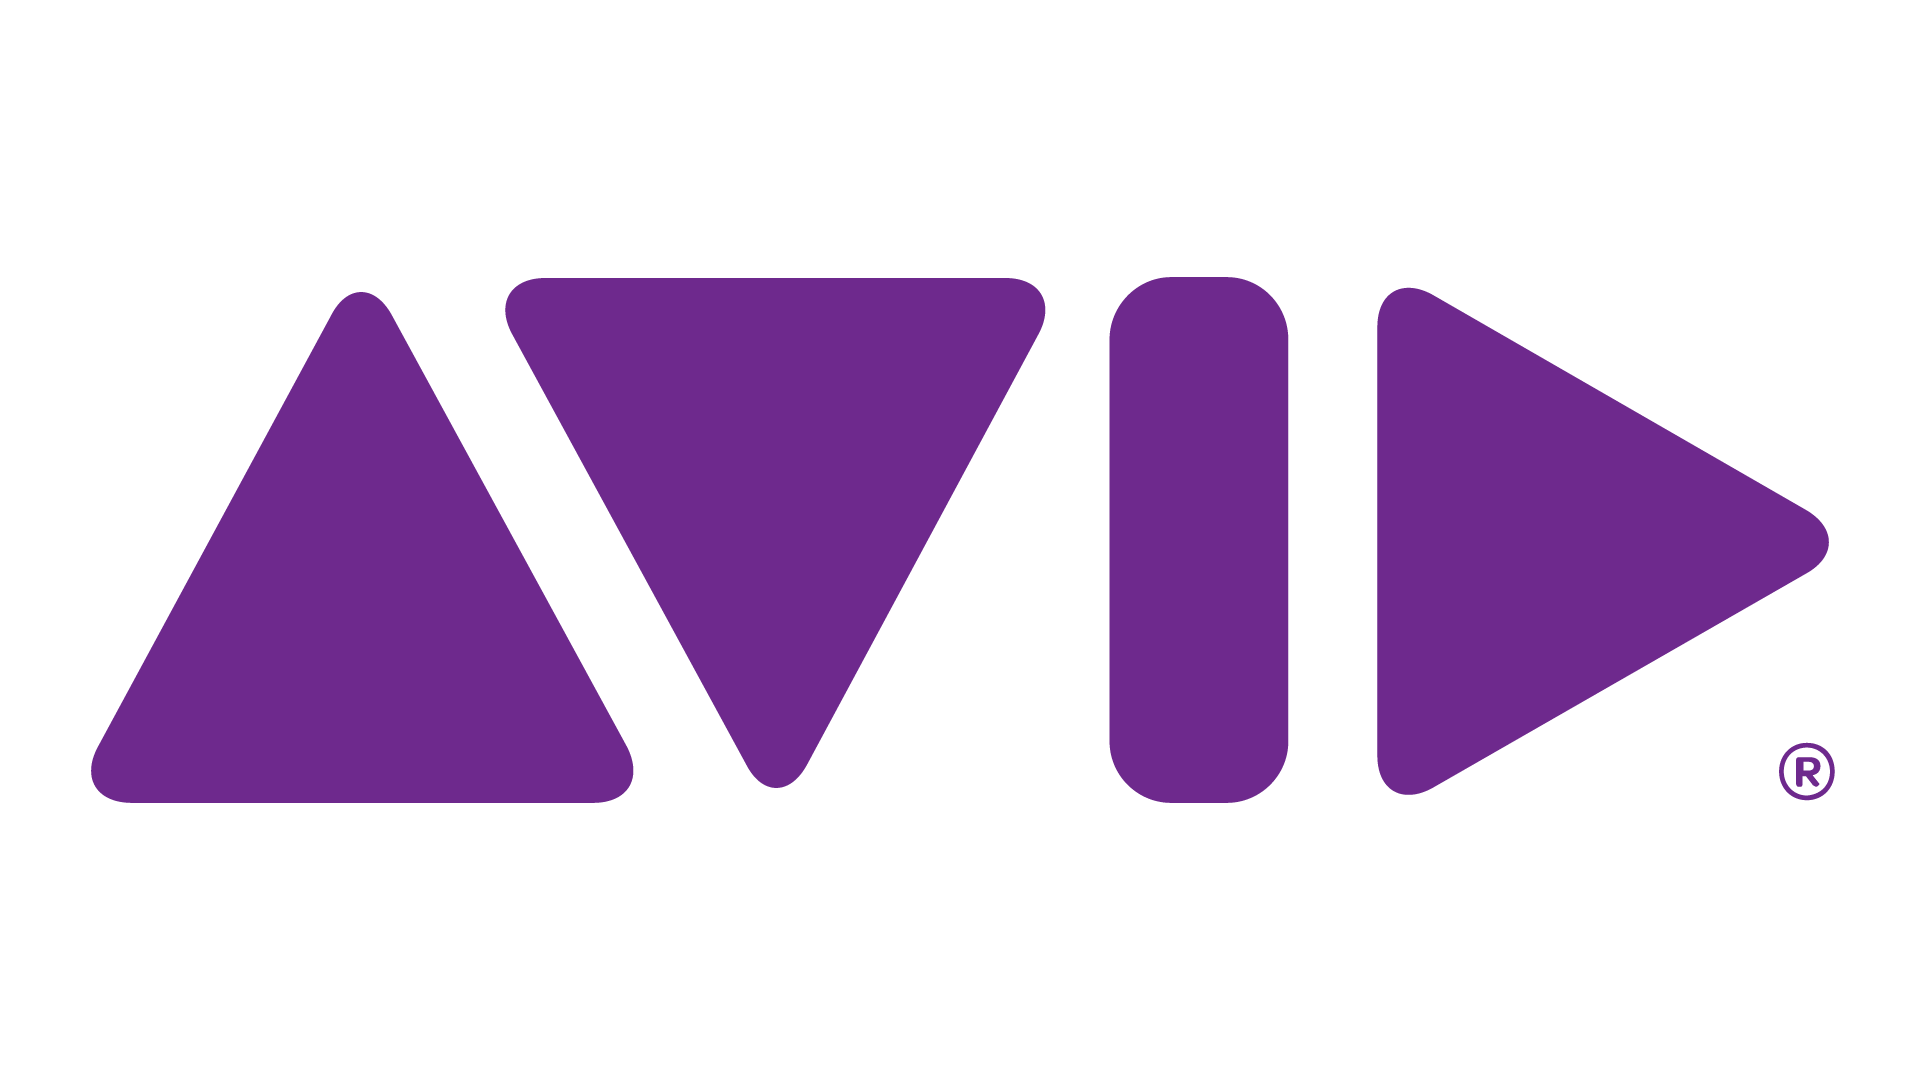 avid_logo